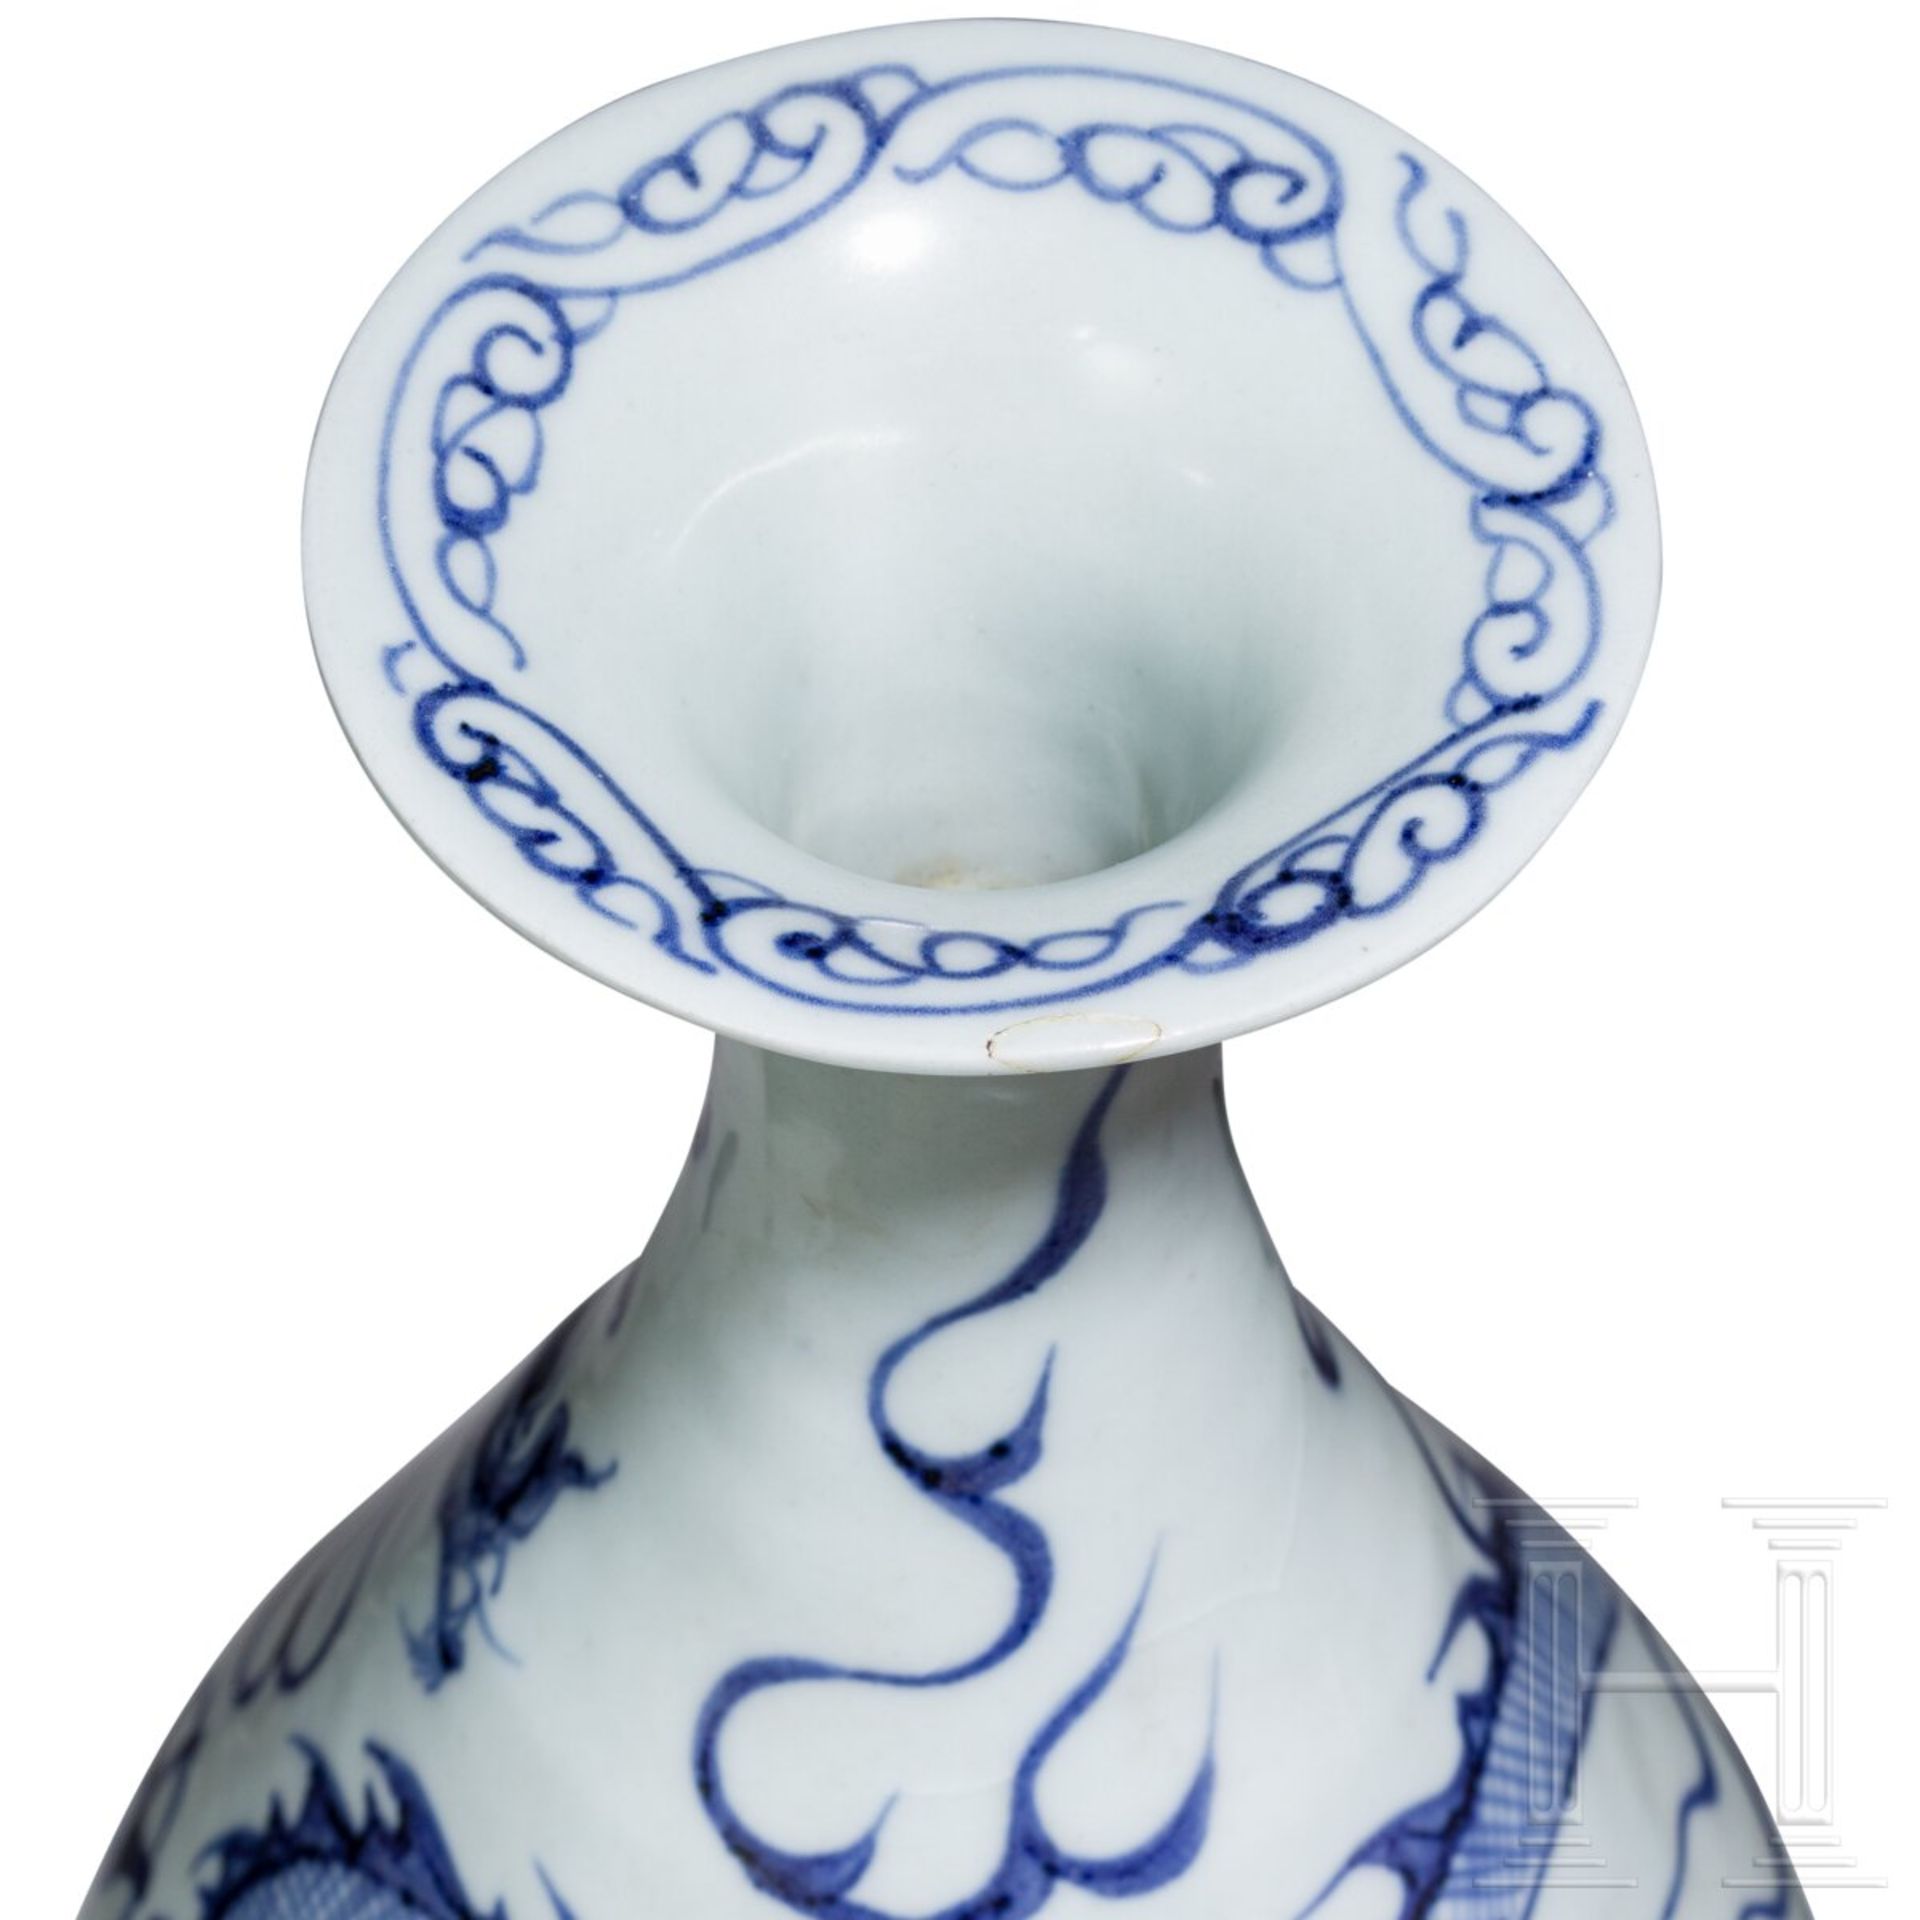 Birnenförmige blau-weiße Vase (Ping) mit Drache, China, wohl Yuan-Dynastie - Bild 4 aus 10